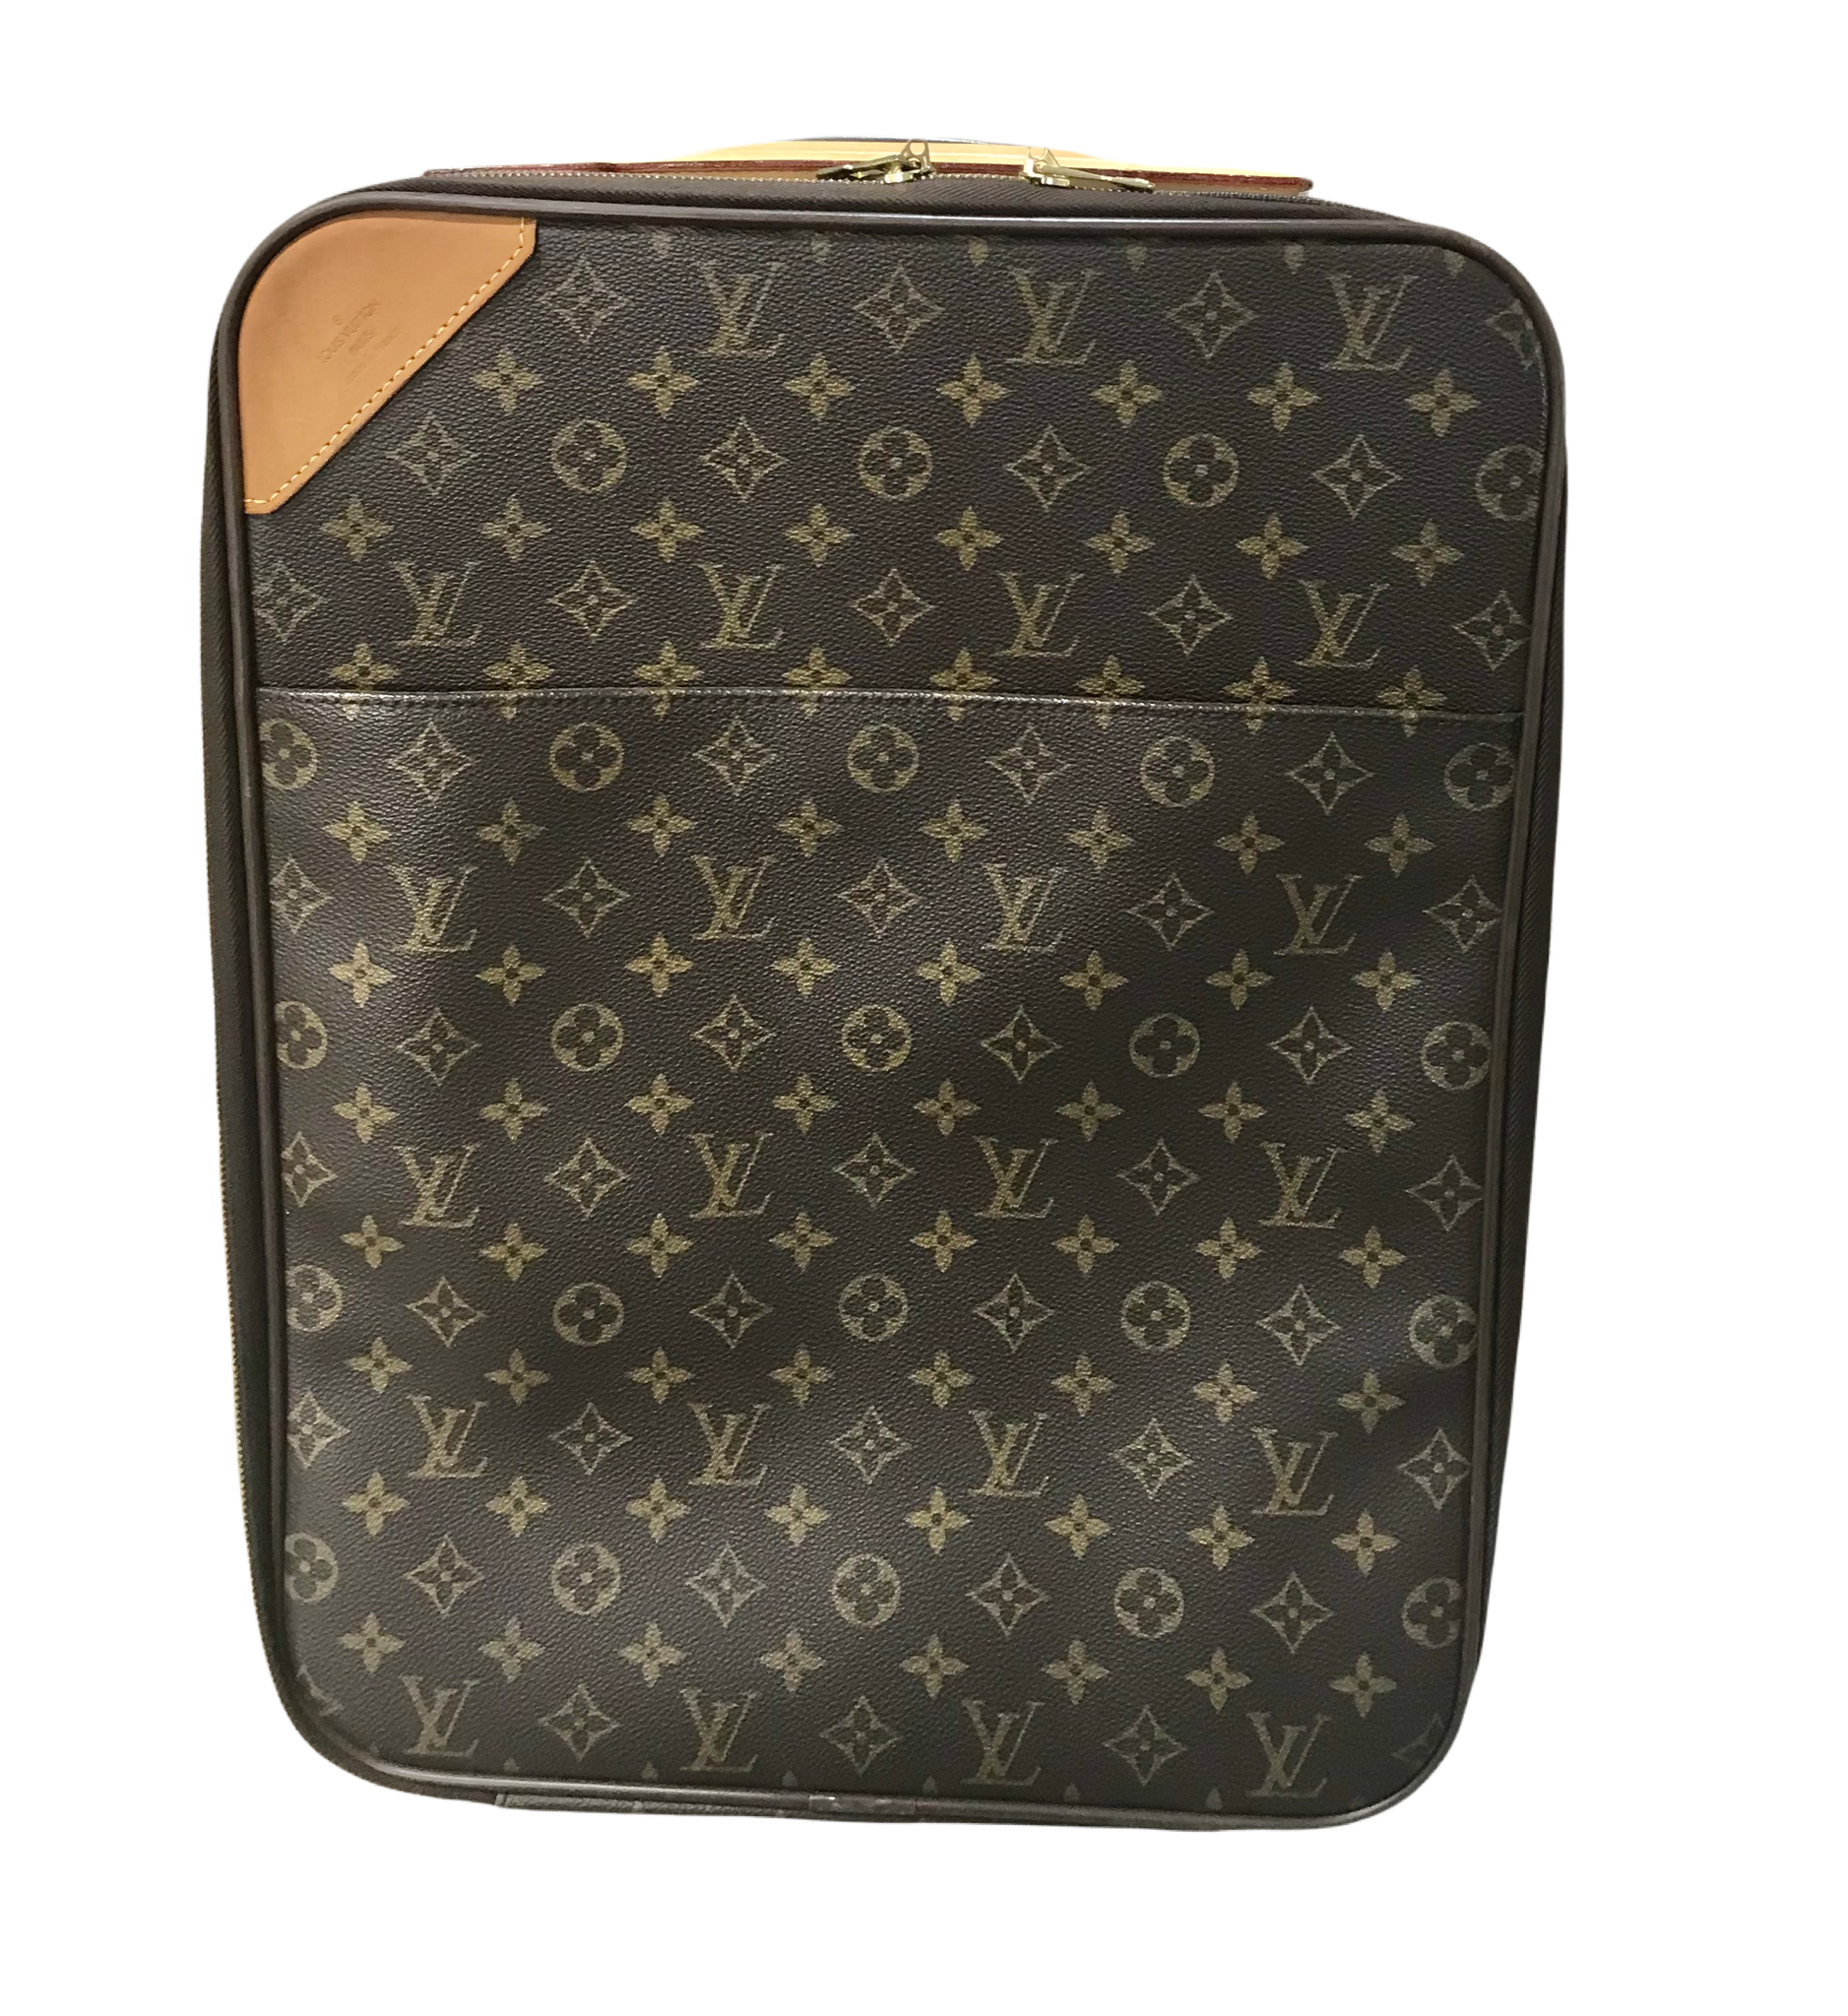 Louis Vuitton, Bags, Authentic Vintage Louis Vuitton Rolling Suitcase